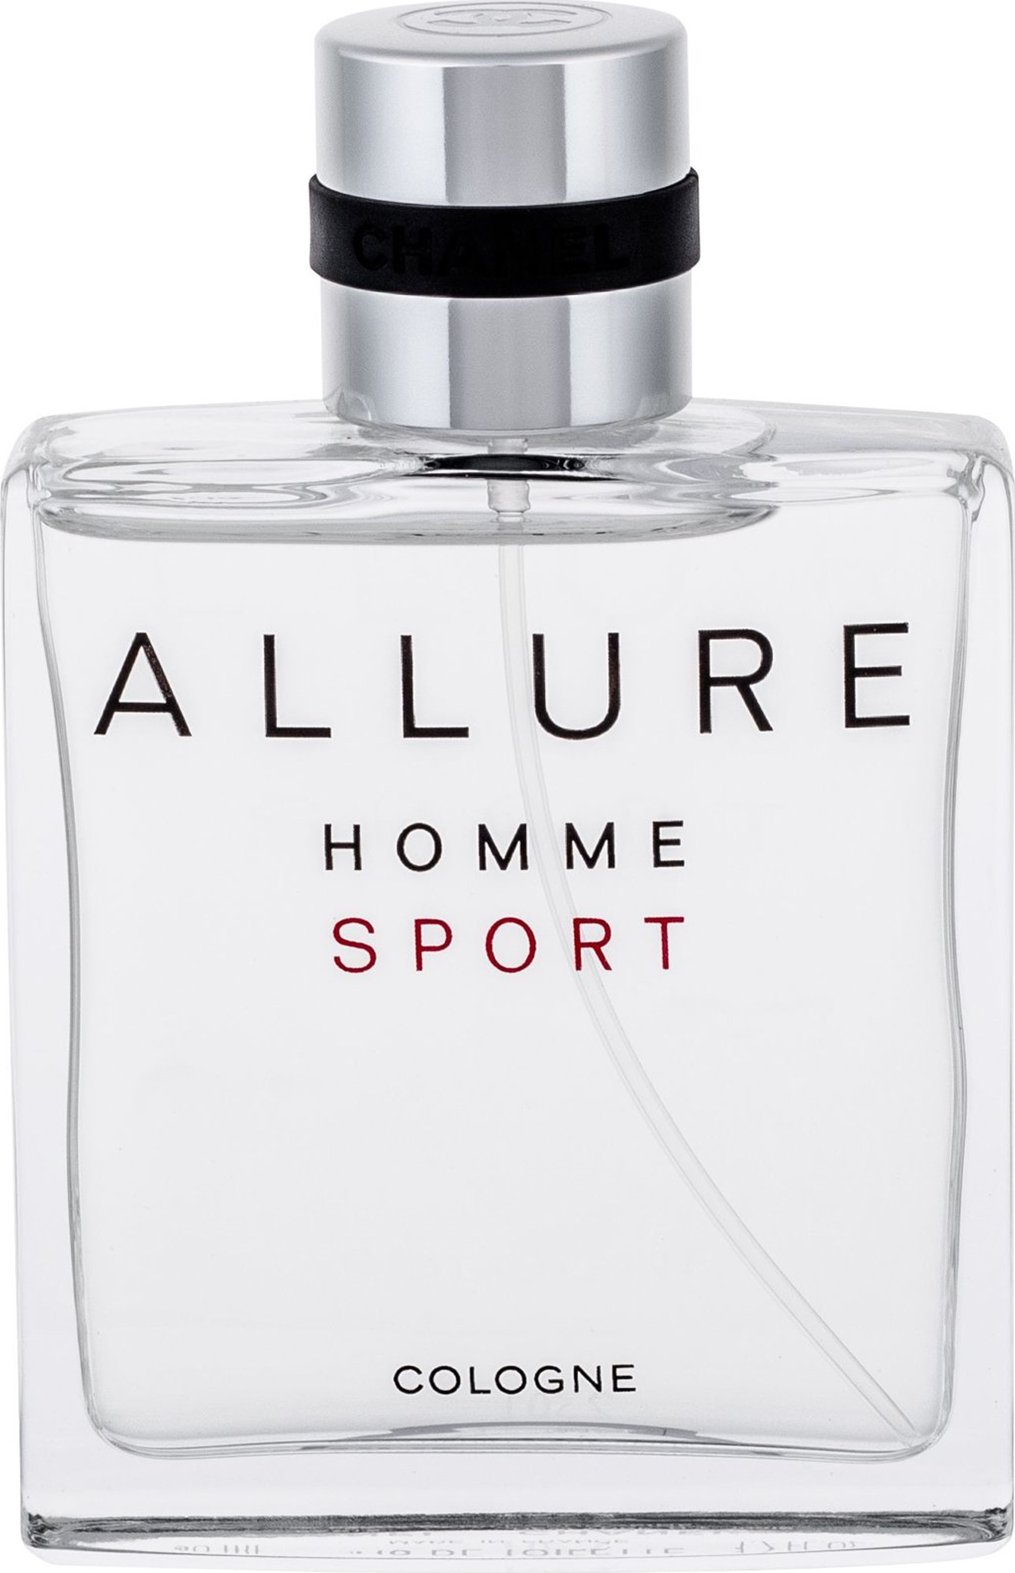 Allure sport cologne. Chanel Allure Sport 100 ml. Chanel Allure homme Sport Cologne 100 ml. Chanel Allure homme Sport 50ml. Chanel Allure Sport Cologne 50ml.